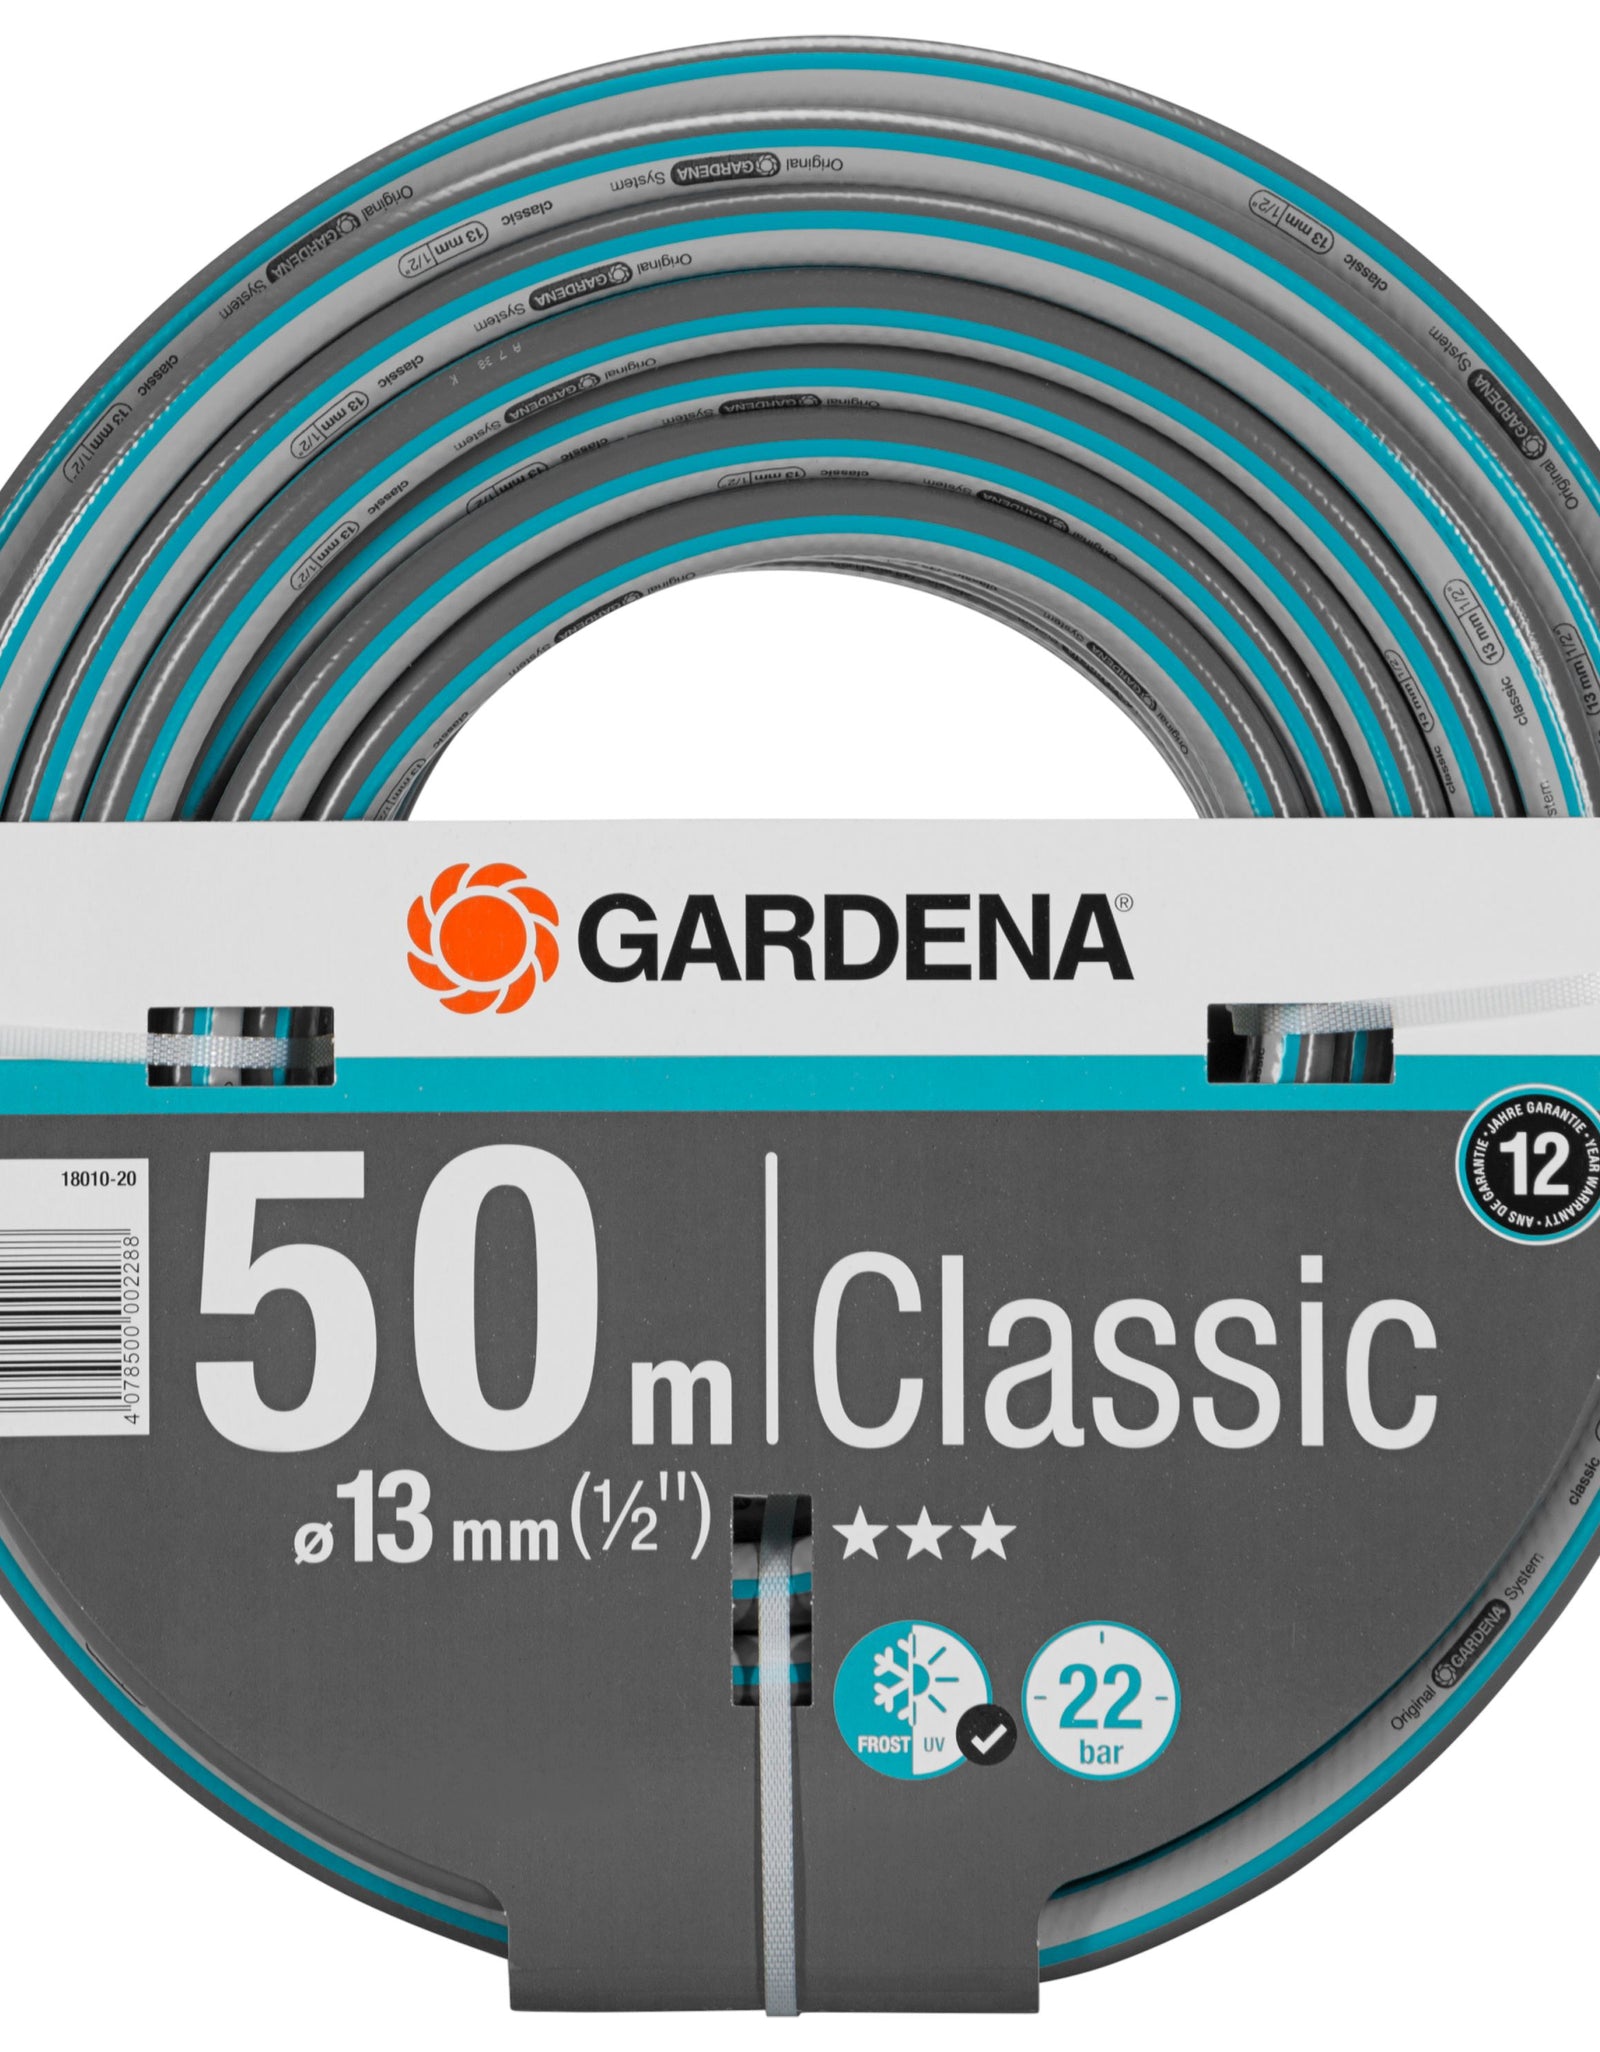 GARDENA Classic Hose 13mm (1/2") x 50m